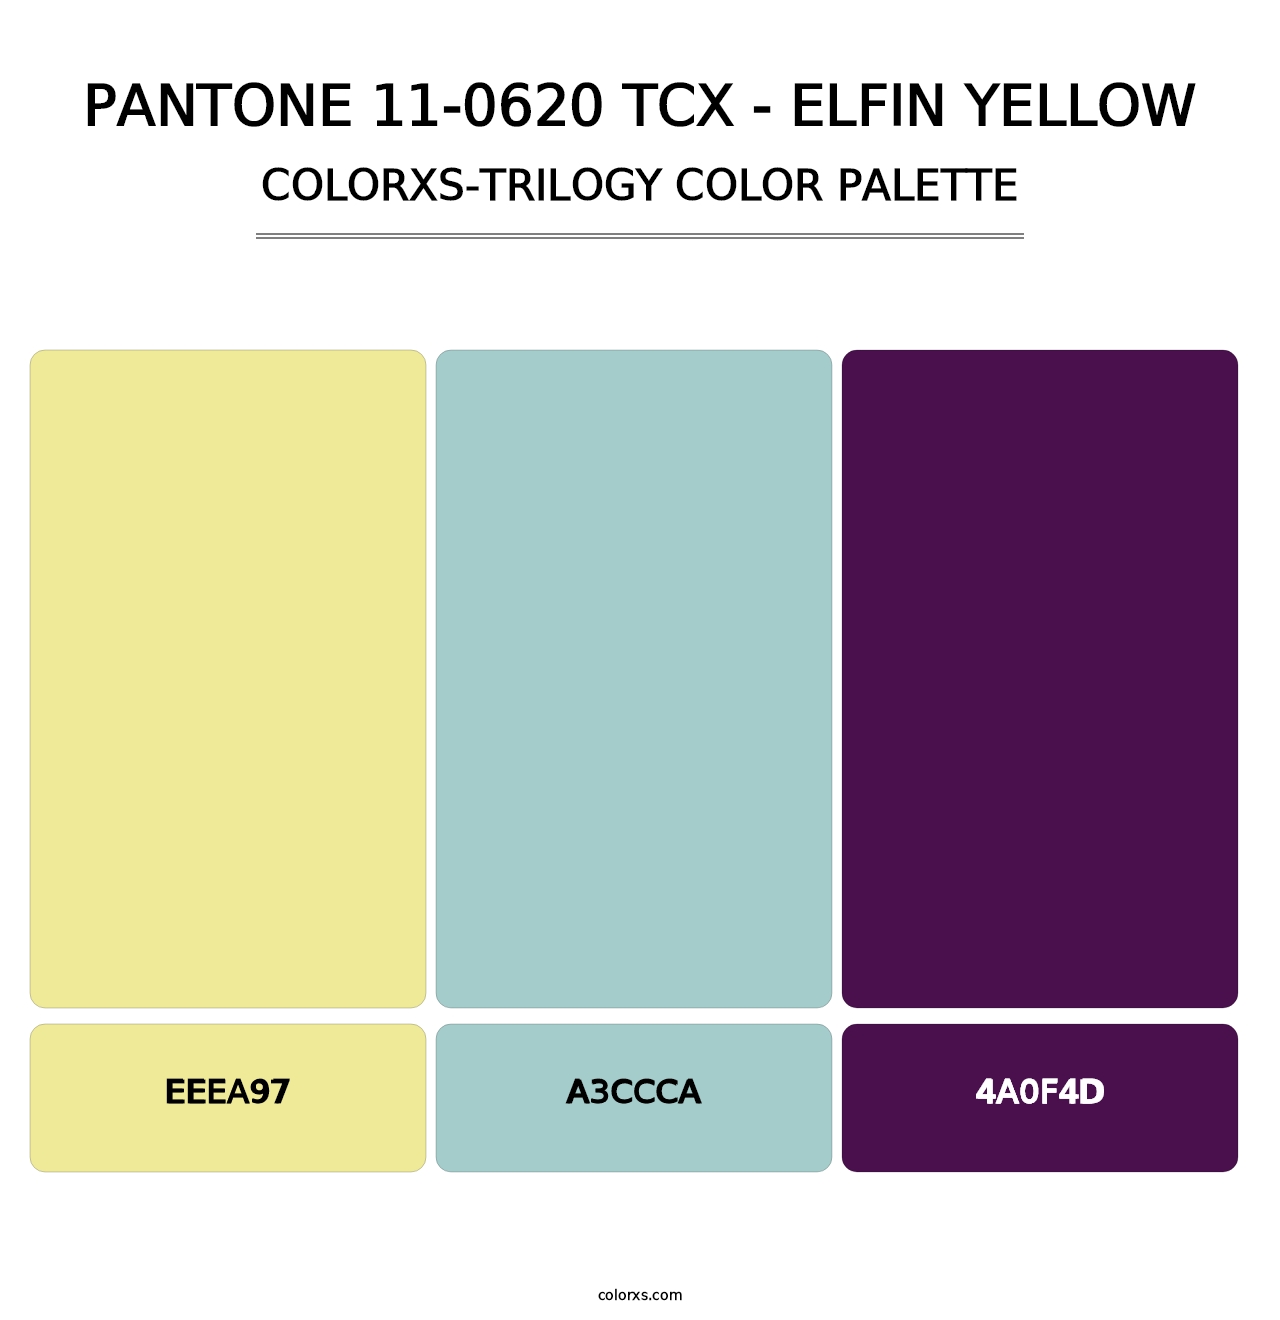 PANTONE 11-0620 TCX - Elfin Yellow - Colorxs Trilogy Palette